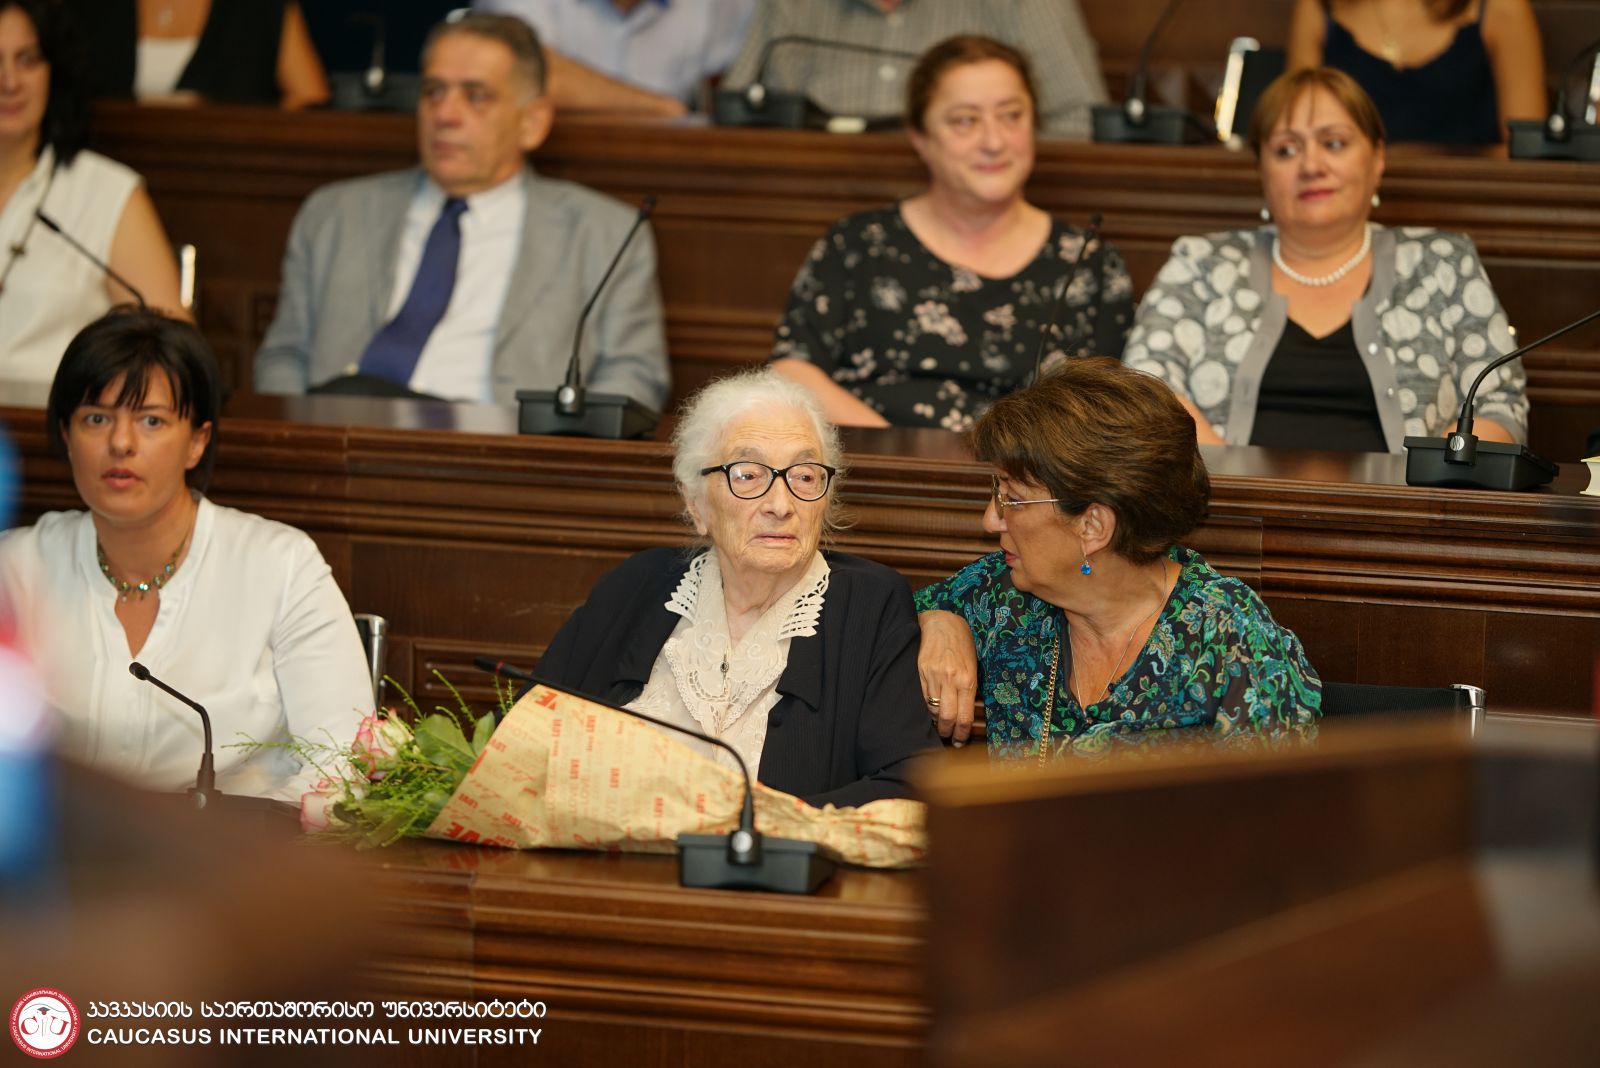 აკადემიკოს მარიამ ლორთქიფანიძის 95 წლის იუბილესადმი მიძღვნილი ღონისძიება